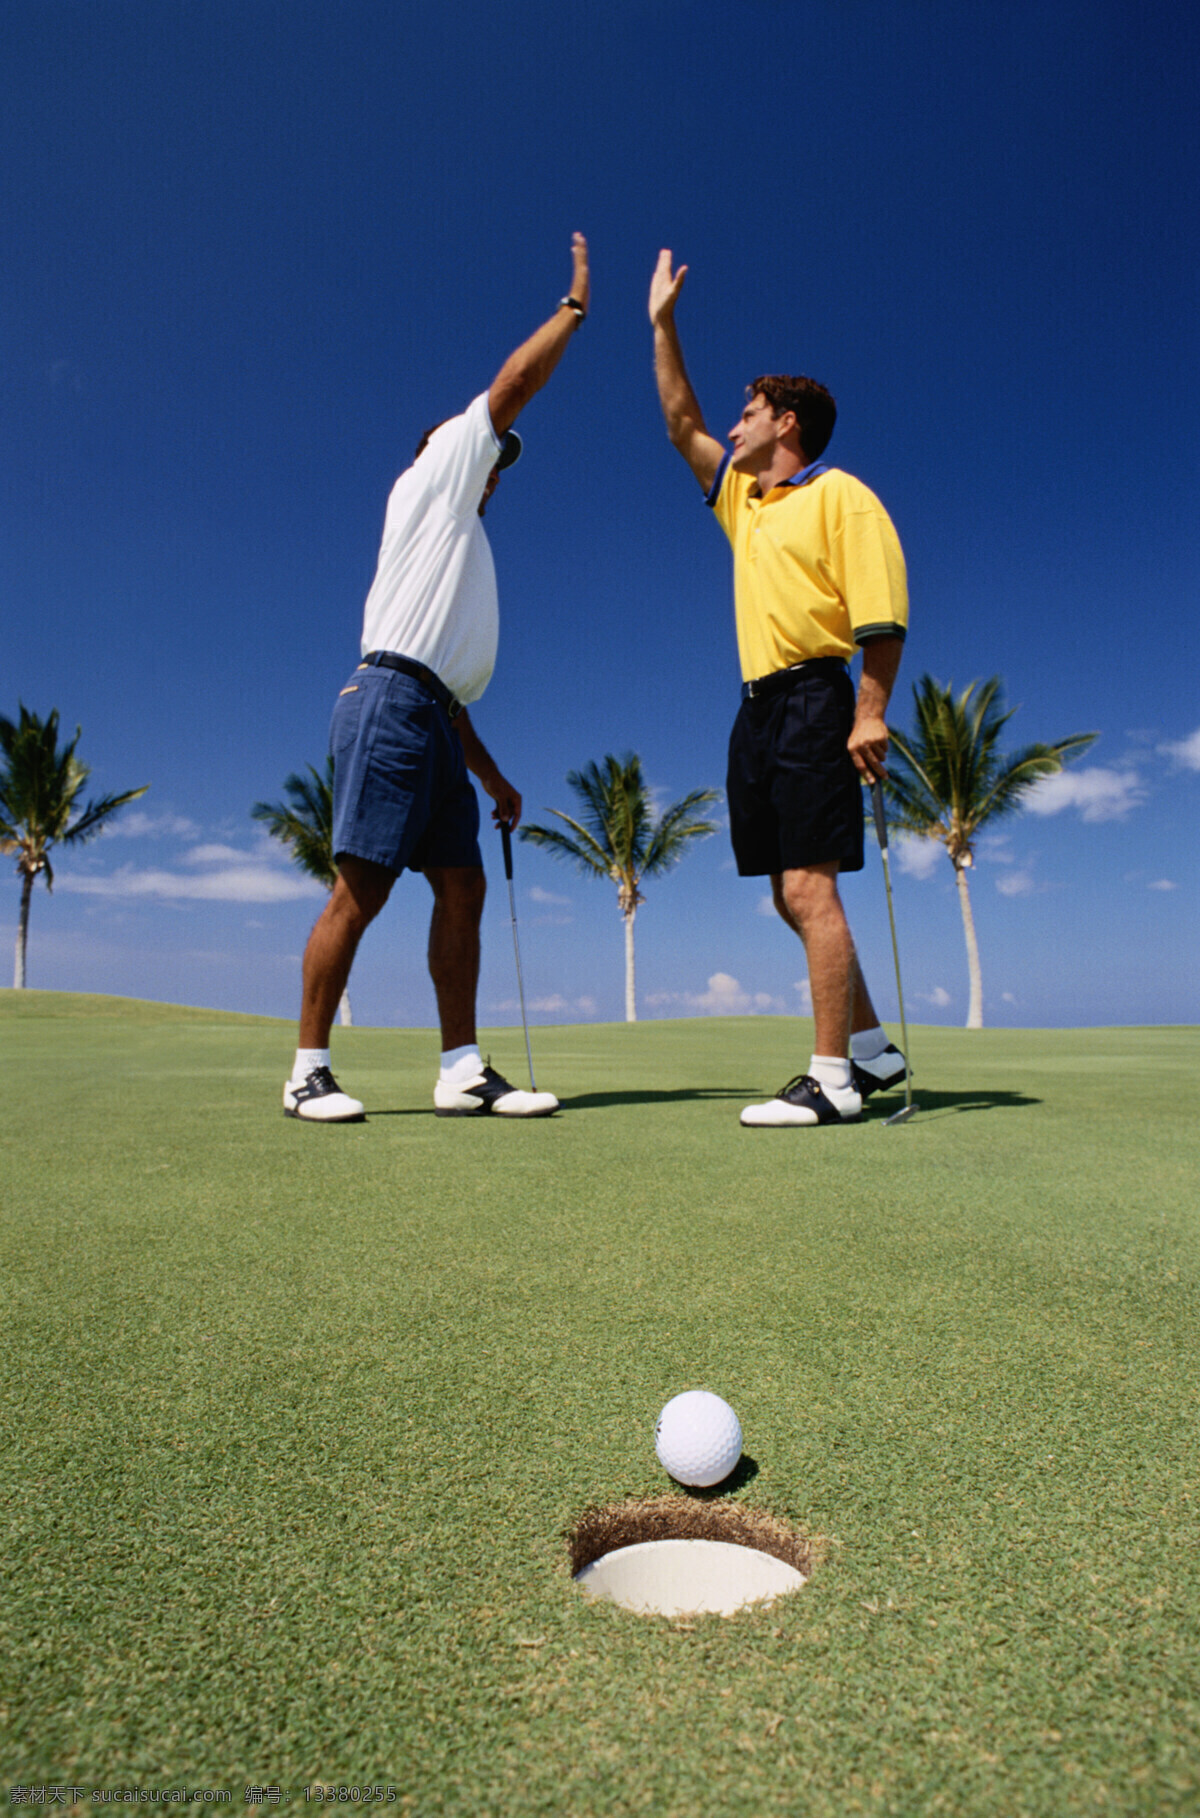 打高尔夫球 拍手庆祝 球进洞 蓝天 草地 运动 文化艺术 体育运动 摄影图库 300